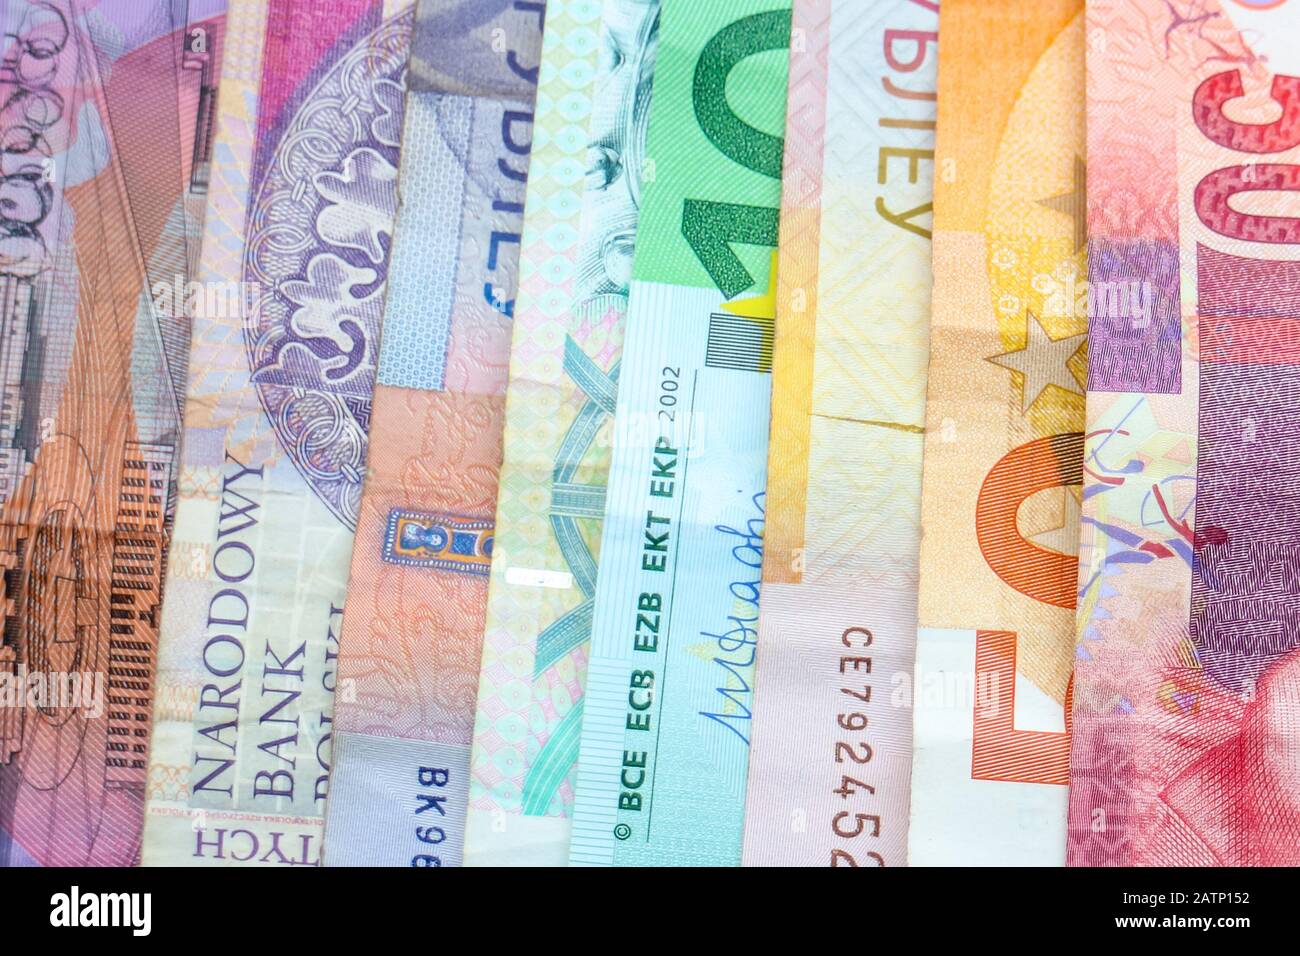 Ein Regenbogen von Banknoten verschiedener Weltwährungen, darunter Euro-Banknoten, australische Dollar, israelische Schekel, südafrikanische Rand und polnische Złoty. Stockfoto